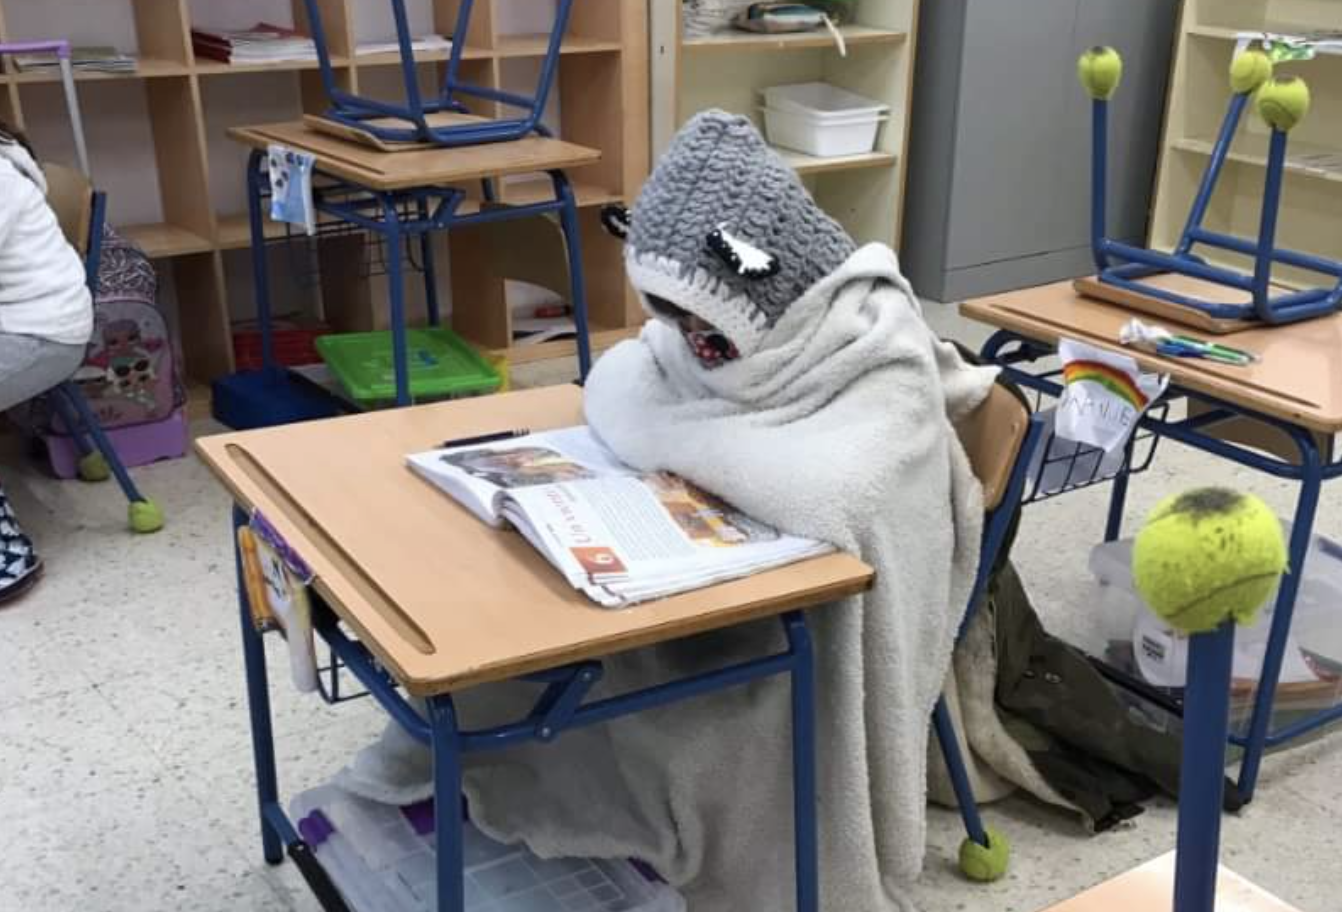 Estudiante hasta arriba de ropa de abrigo para combatir el frío en un aula en pandemia.